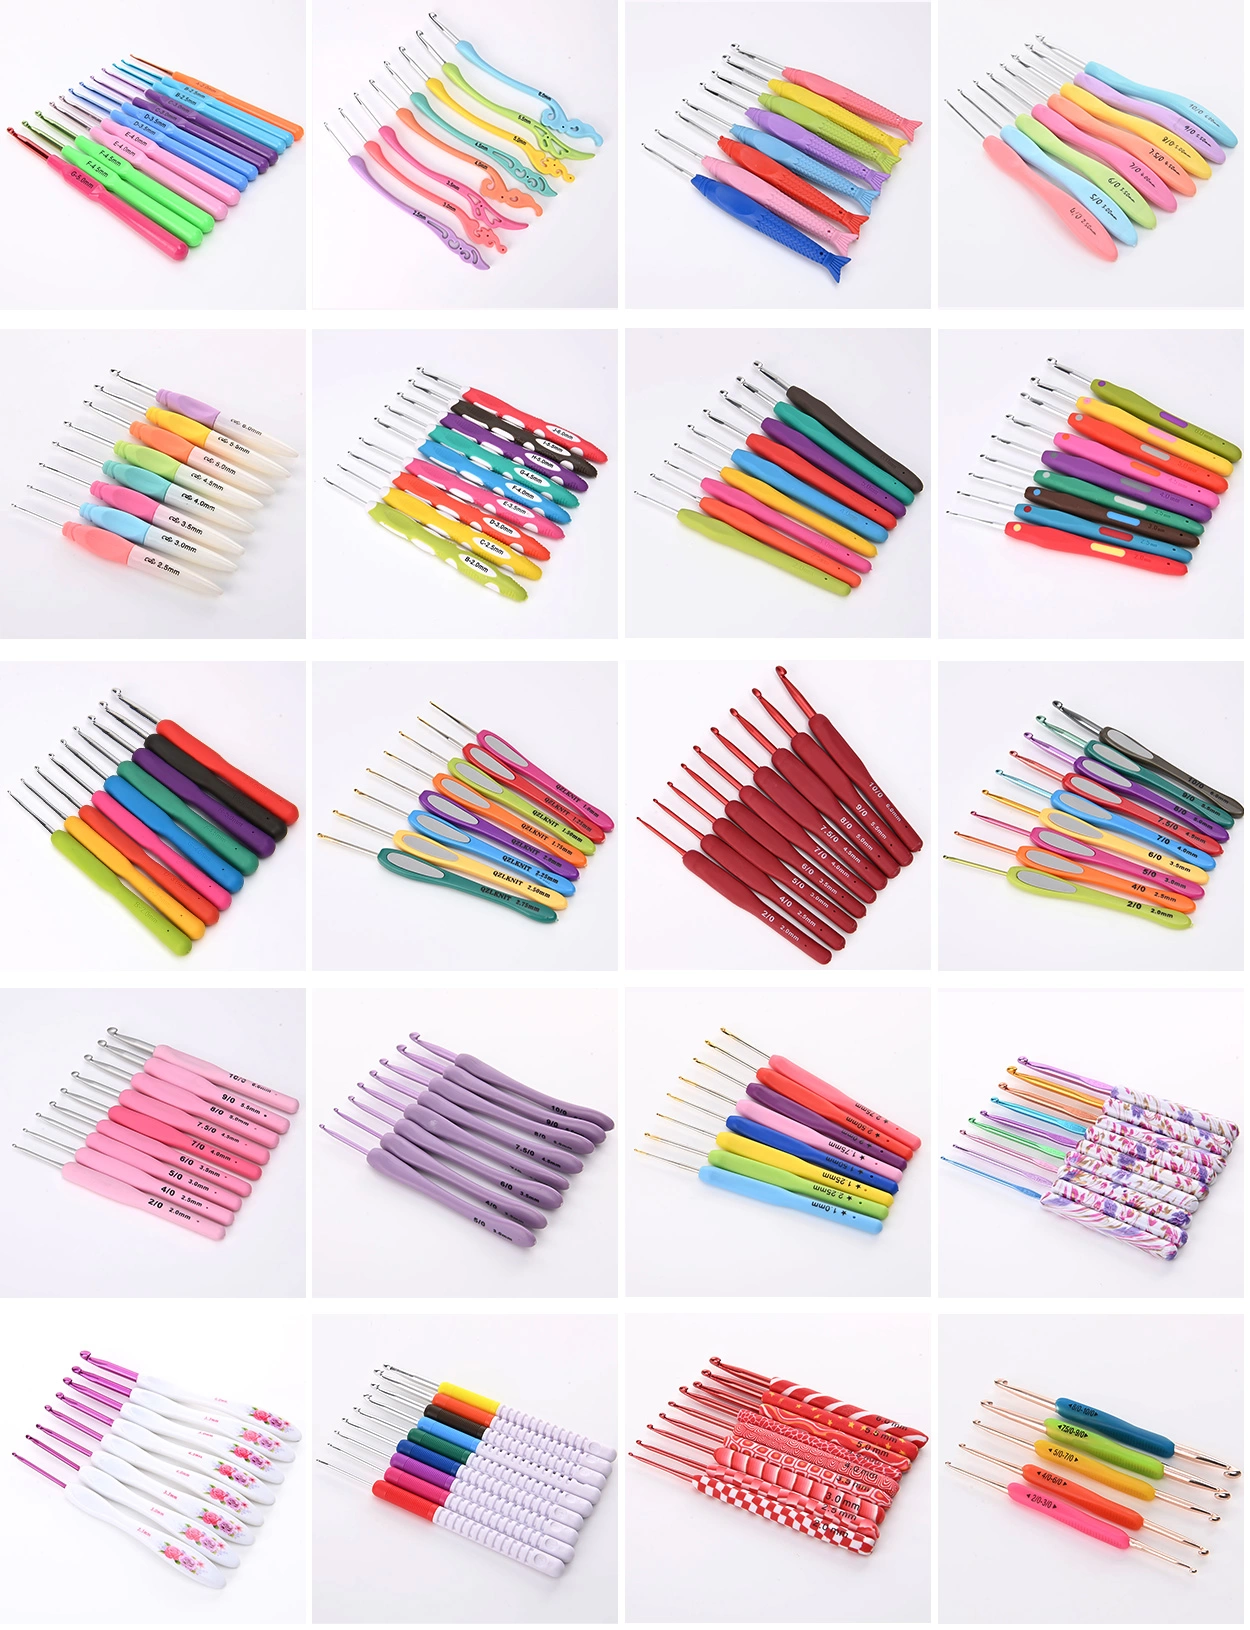 12 Pcs Multi-color Ergonomic Handle Crochet Hooks Set | Ningbo MH